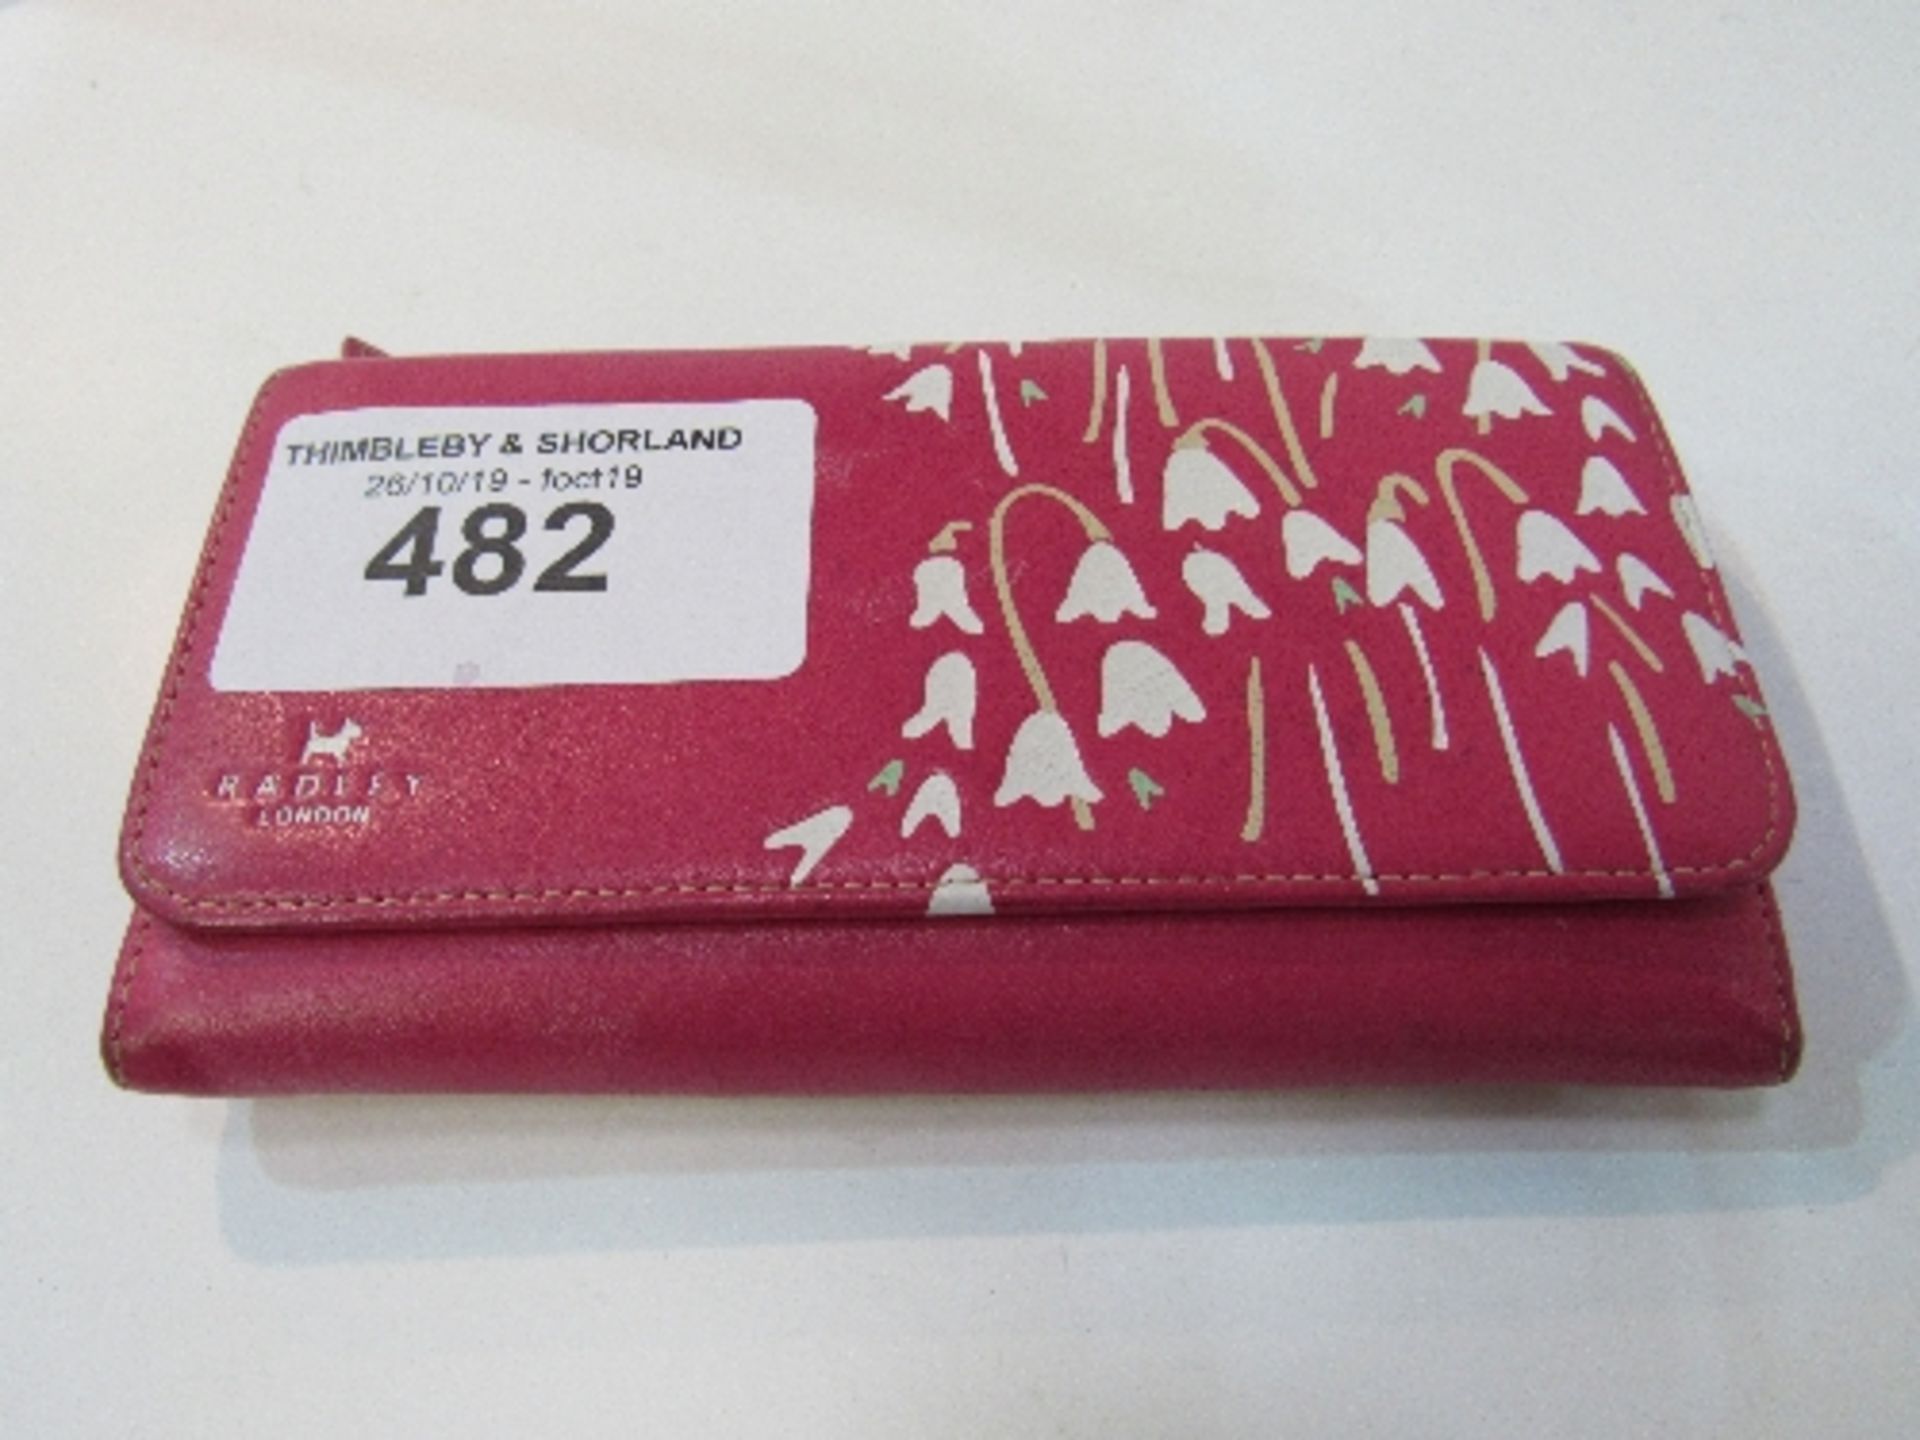 Radley of London leather designer purse/wallet. Est 15-20